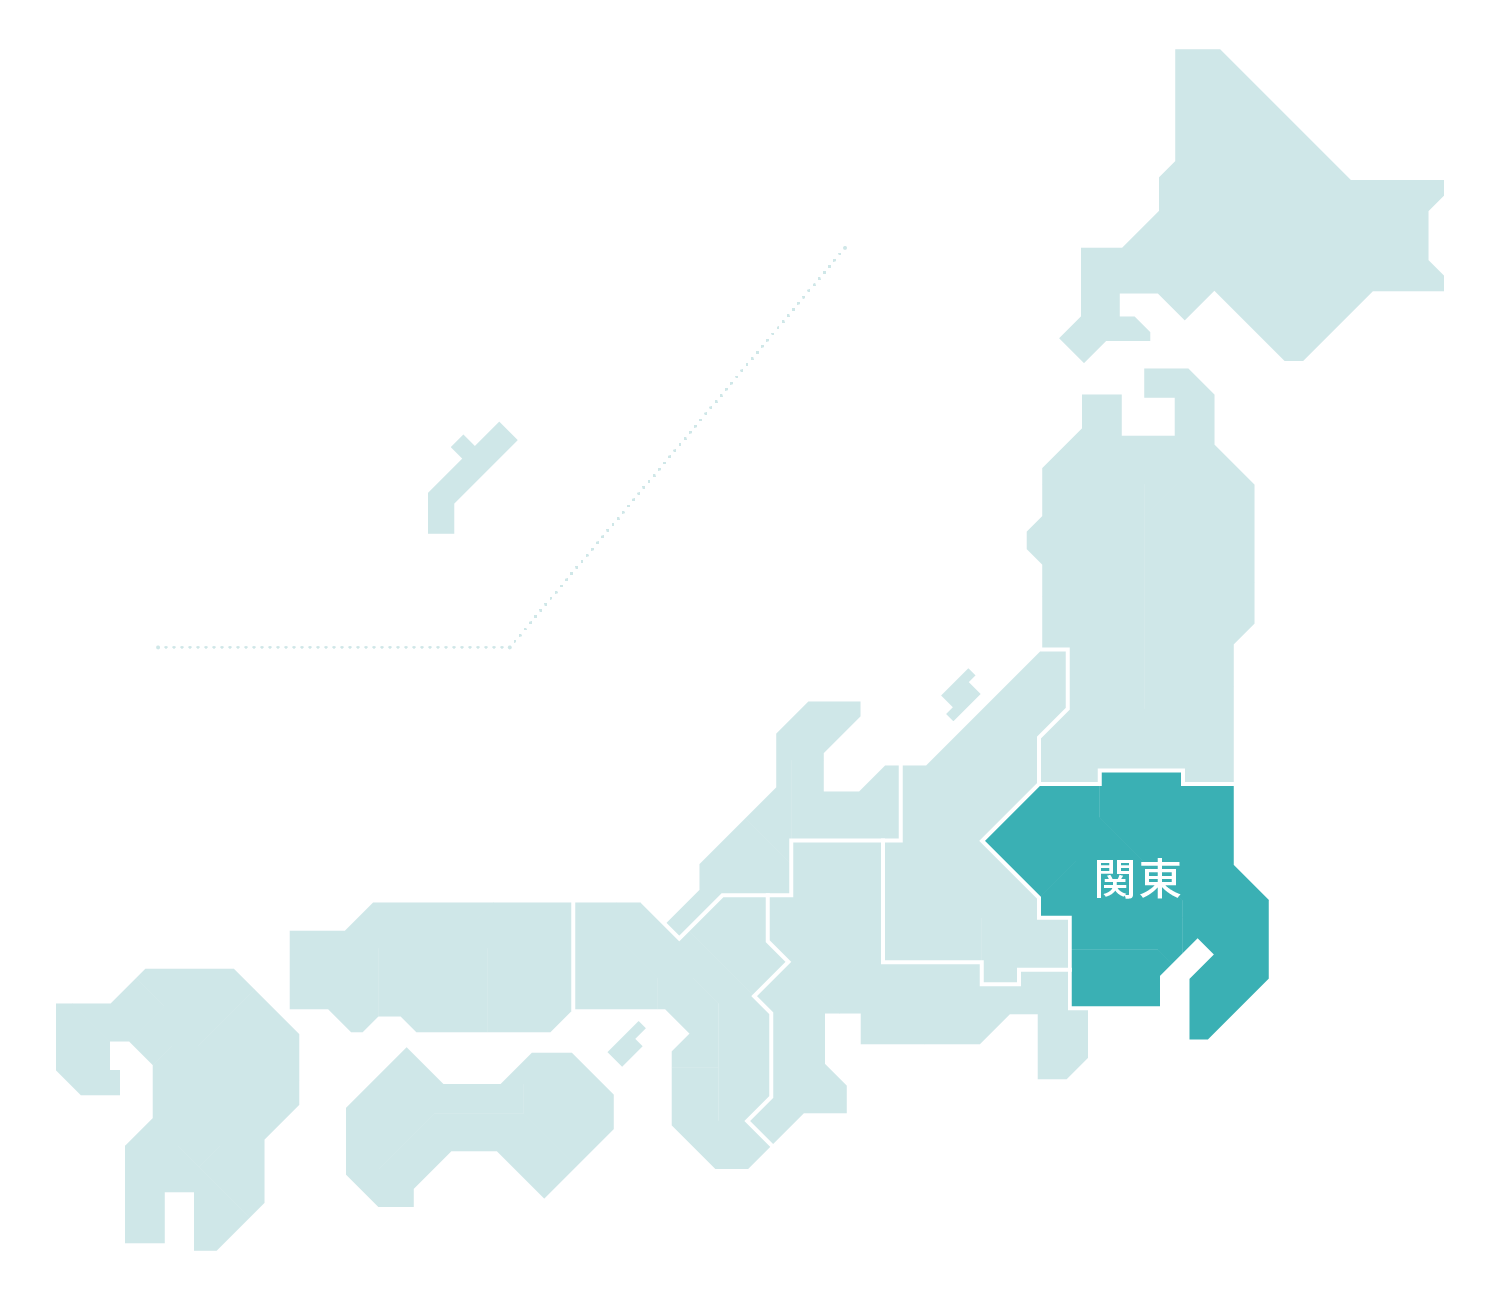 関東マップ